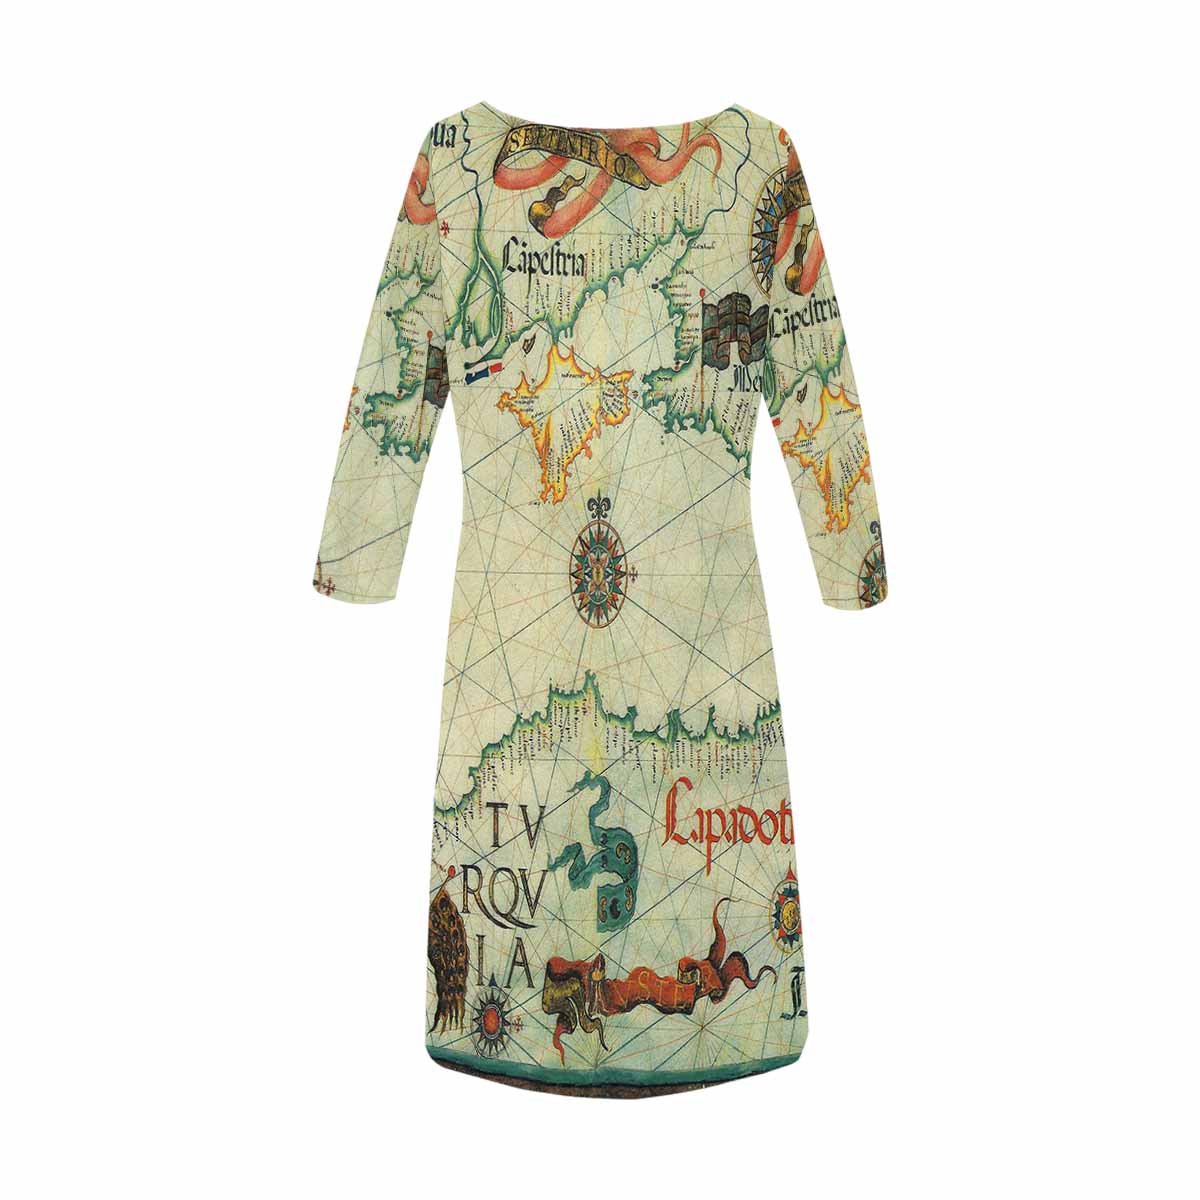 Antique Map loose dress, MODEL 29532, design 27